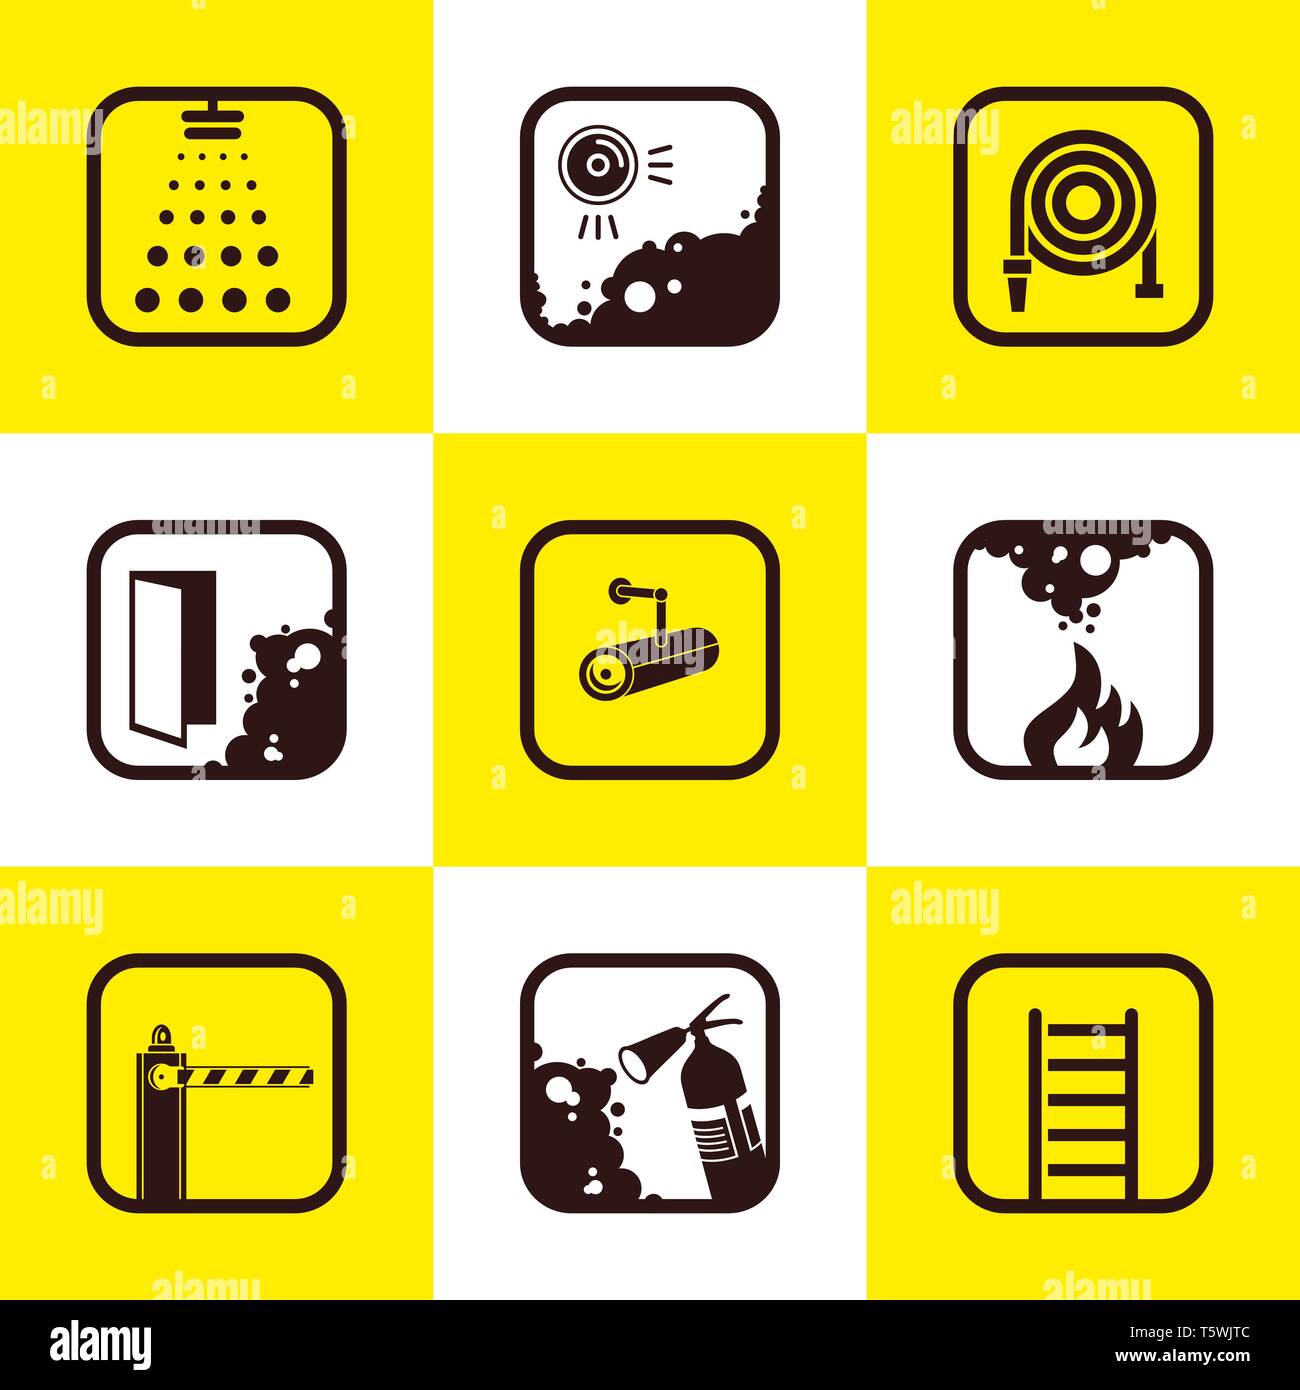 Feuerwehr Symbole. Set von 9 Qualität Symbole. Feuerwehr und Rettungsdienst Icons Set Vector Illustration für Mobile, Web und Anwendungen. Stock Vektor